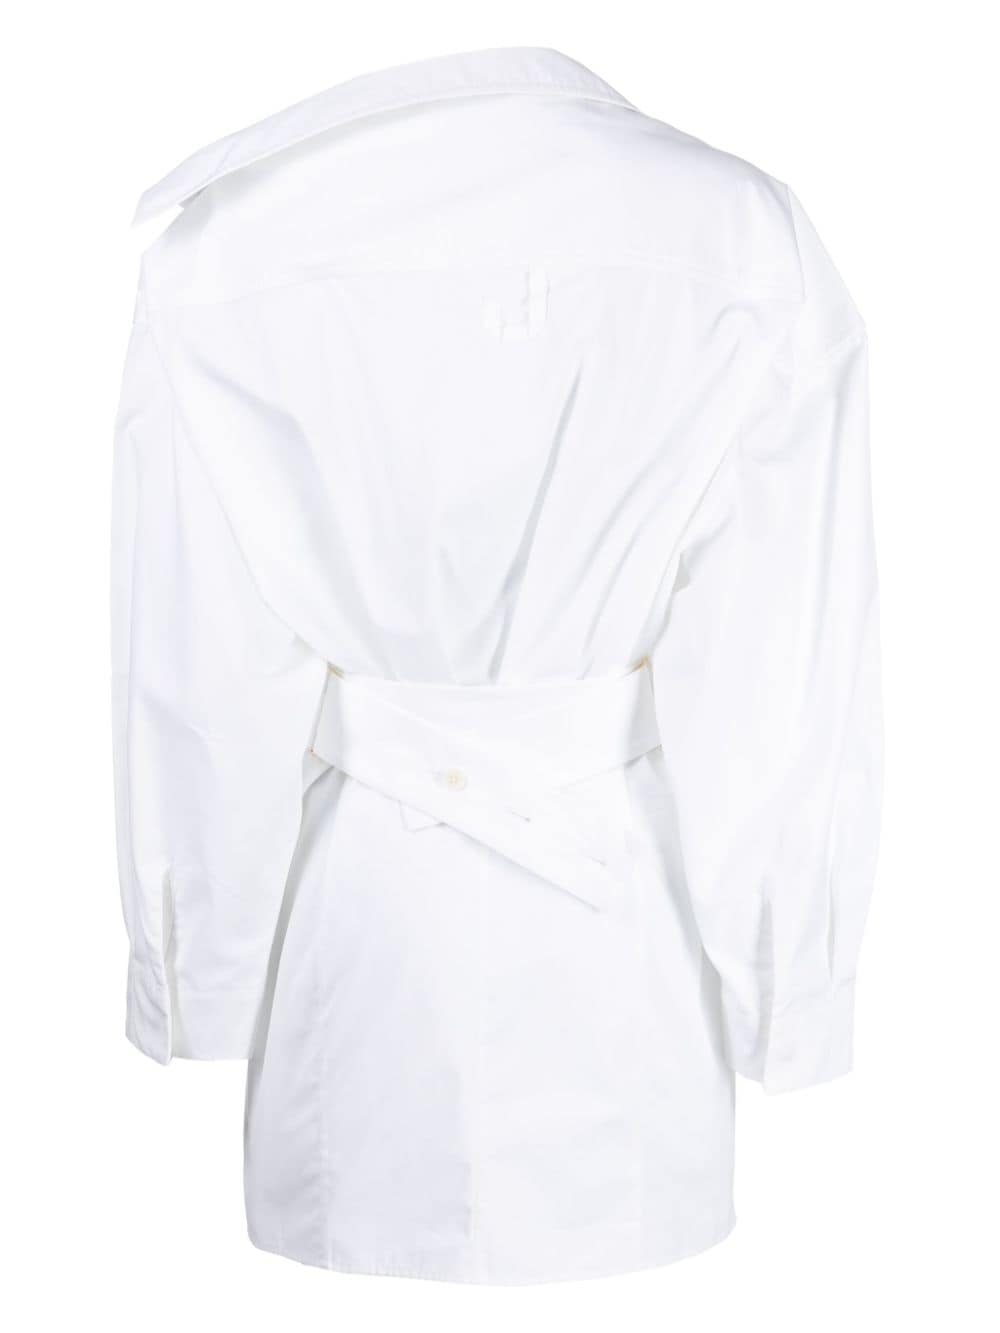 不对称白色棉质衬衫连衣裙，带宽松袖